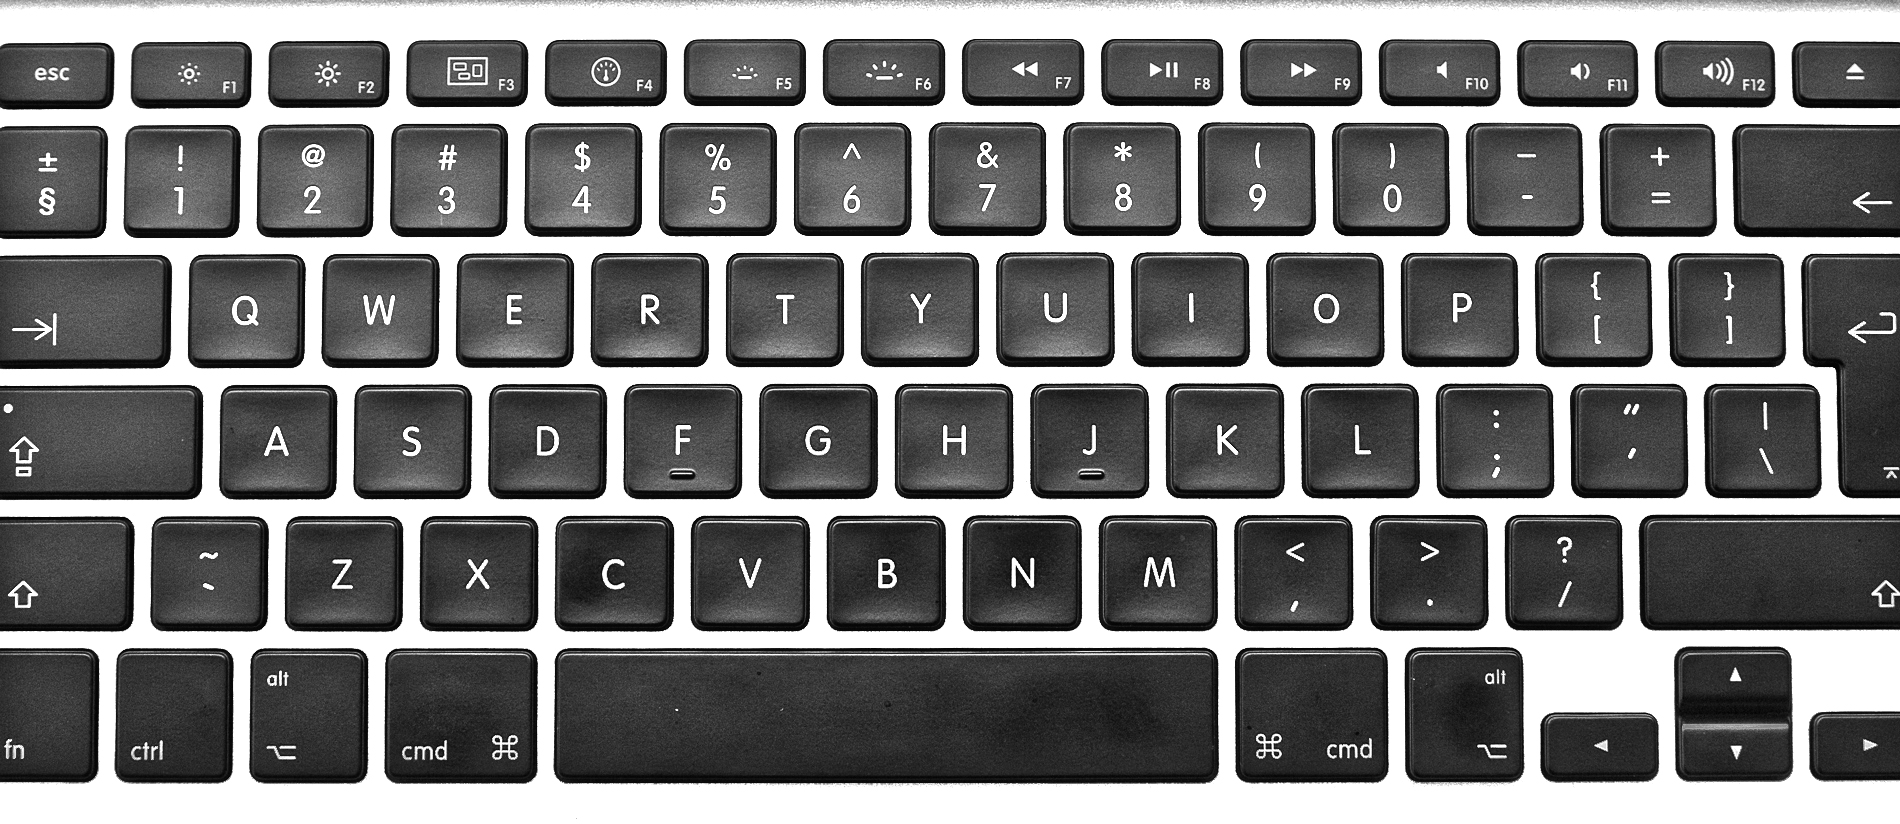 keyboard clipart - photo #37